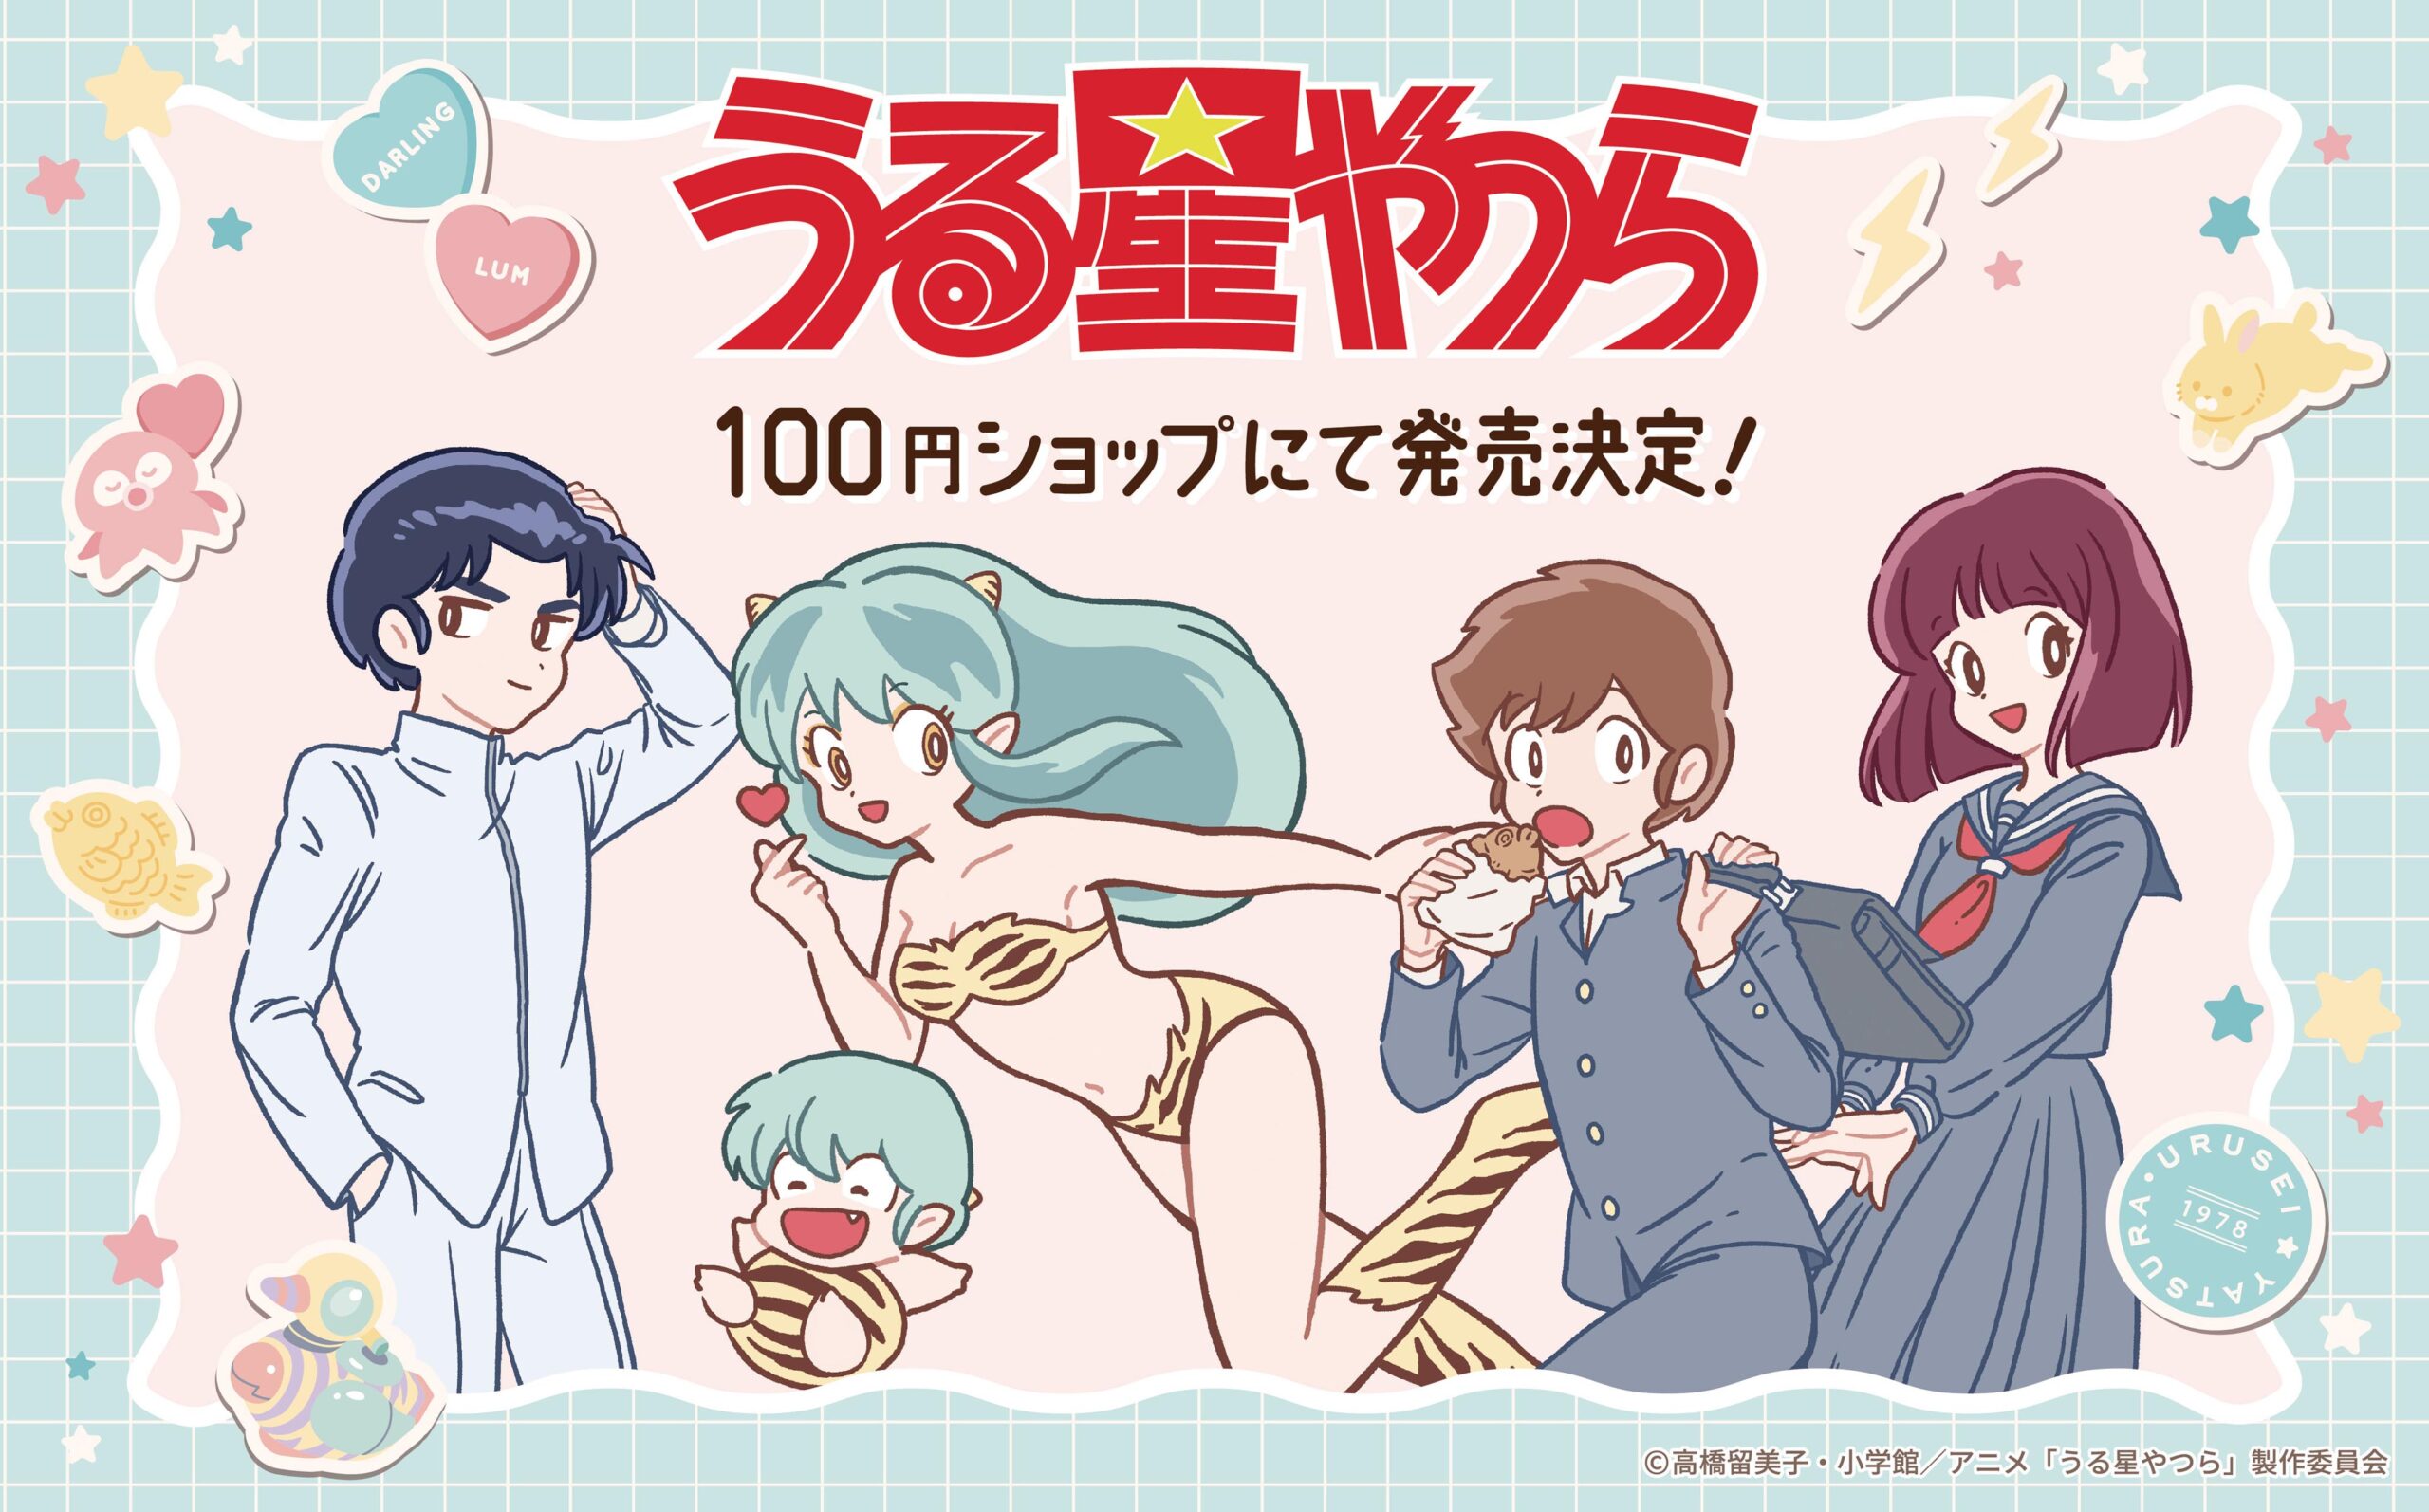 TVアニメ『うる星やつら』のグッズが100円SHOPに登場です！！ - 株式 ...